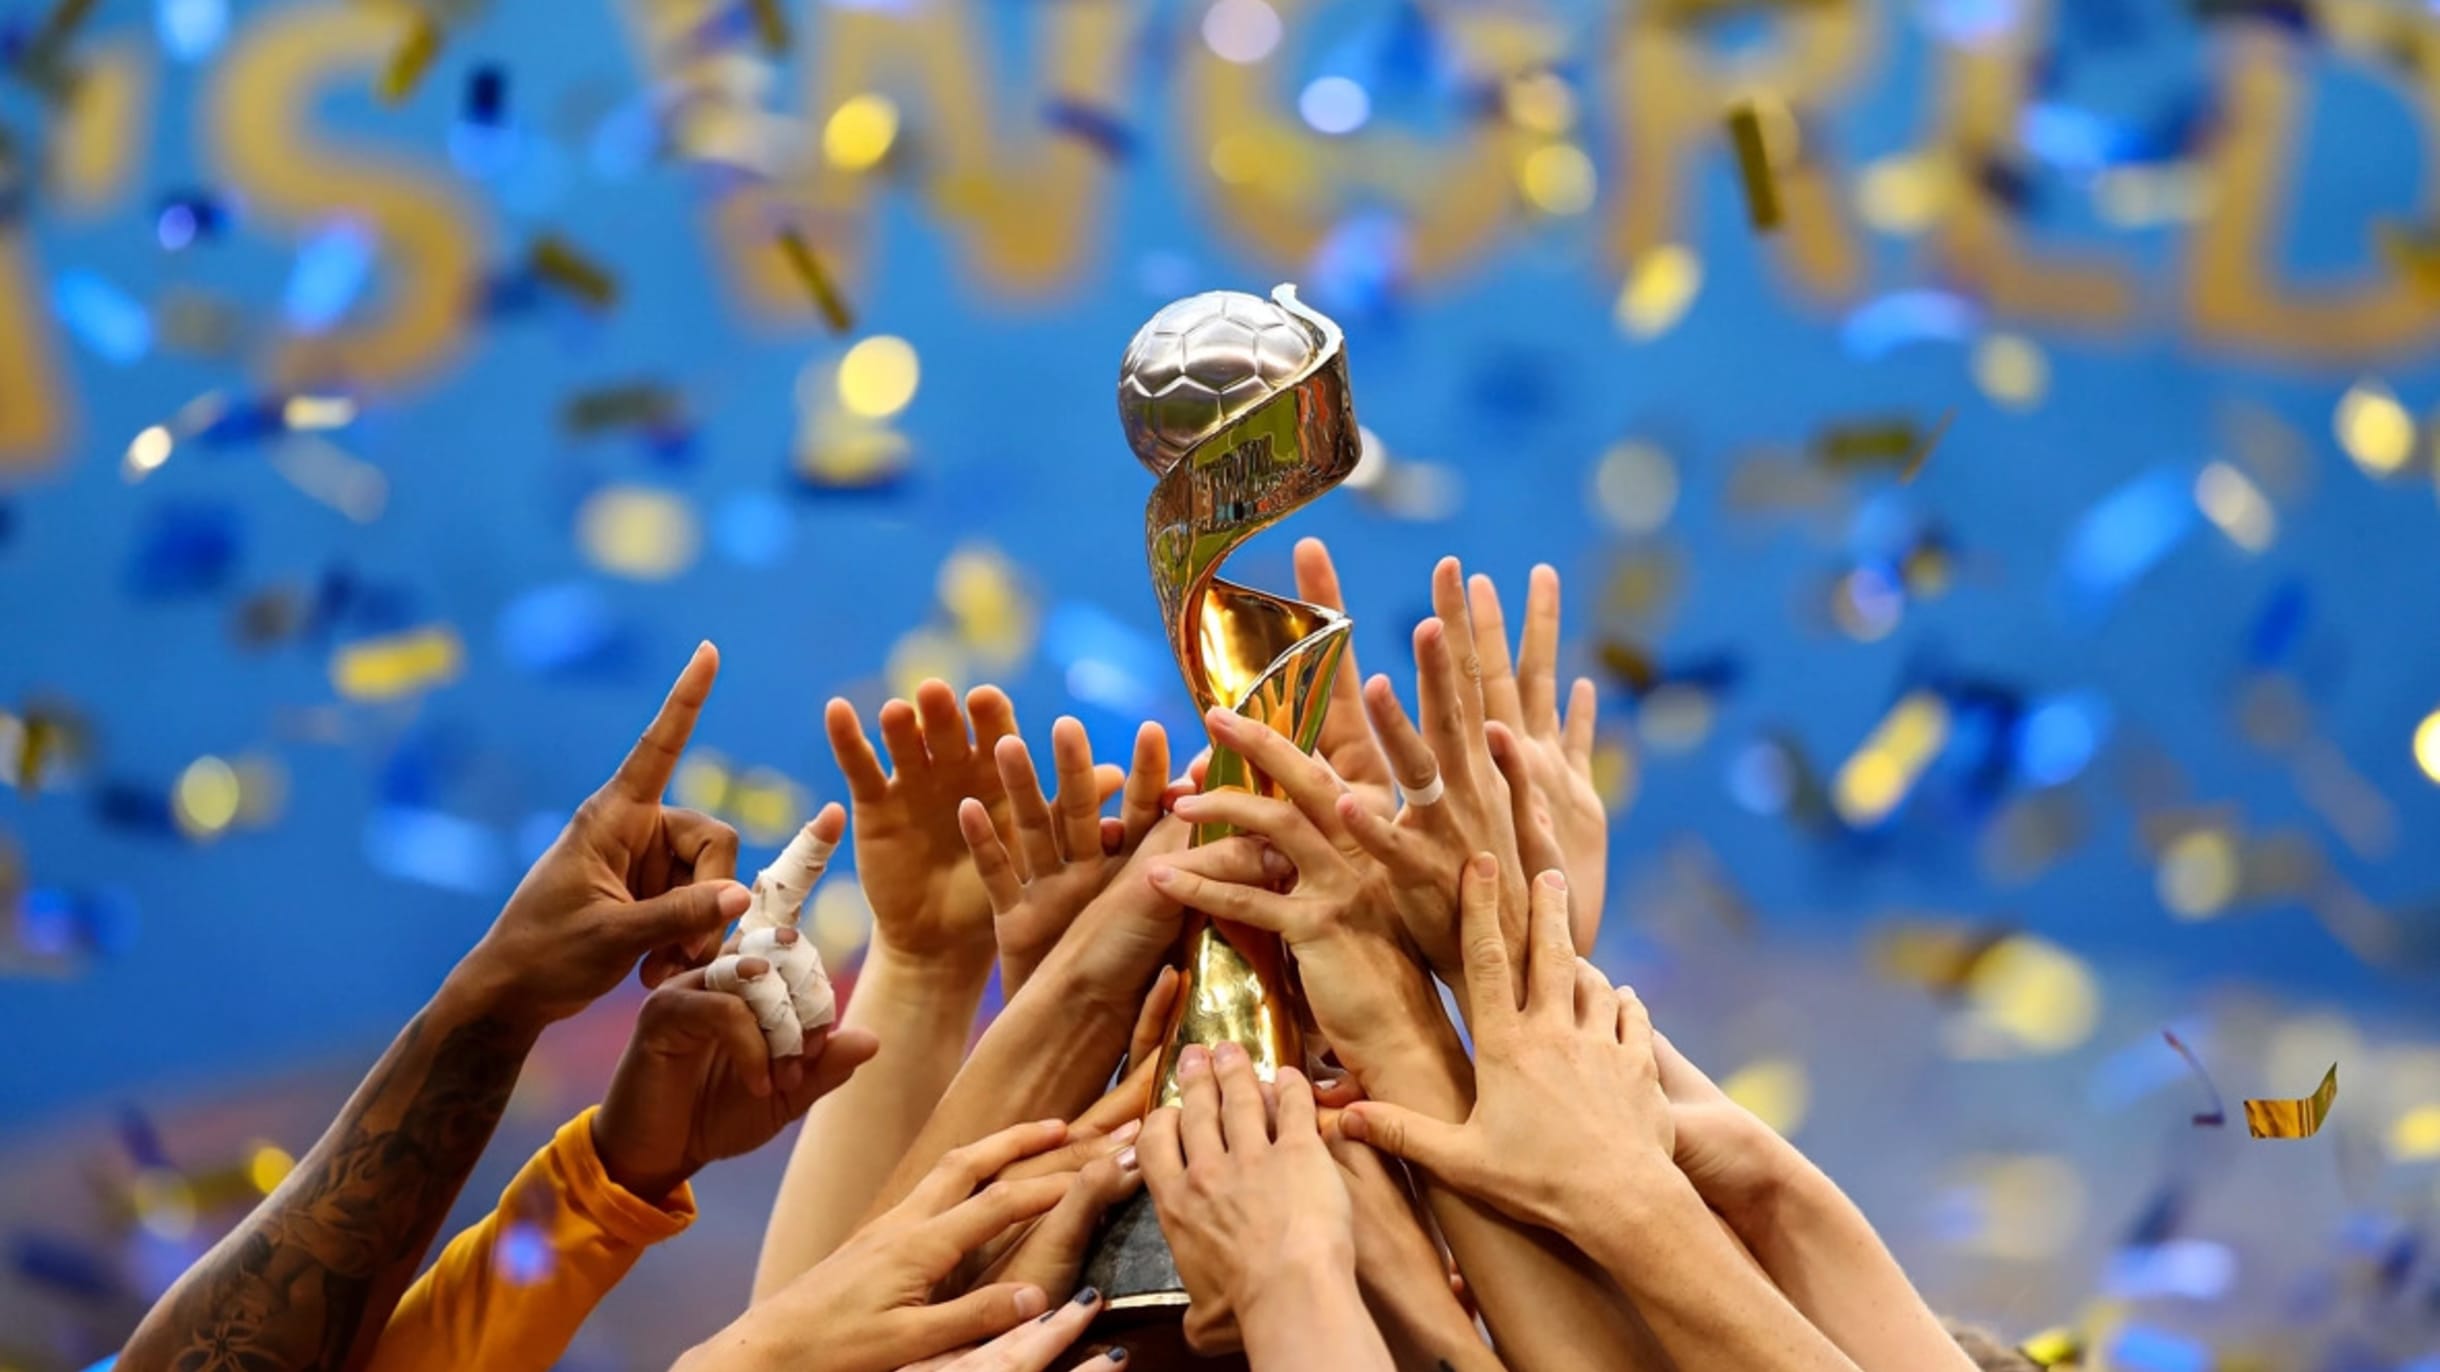 Quais países já ganharam a Copa do Mundo feminina?